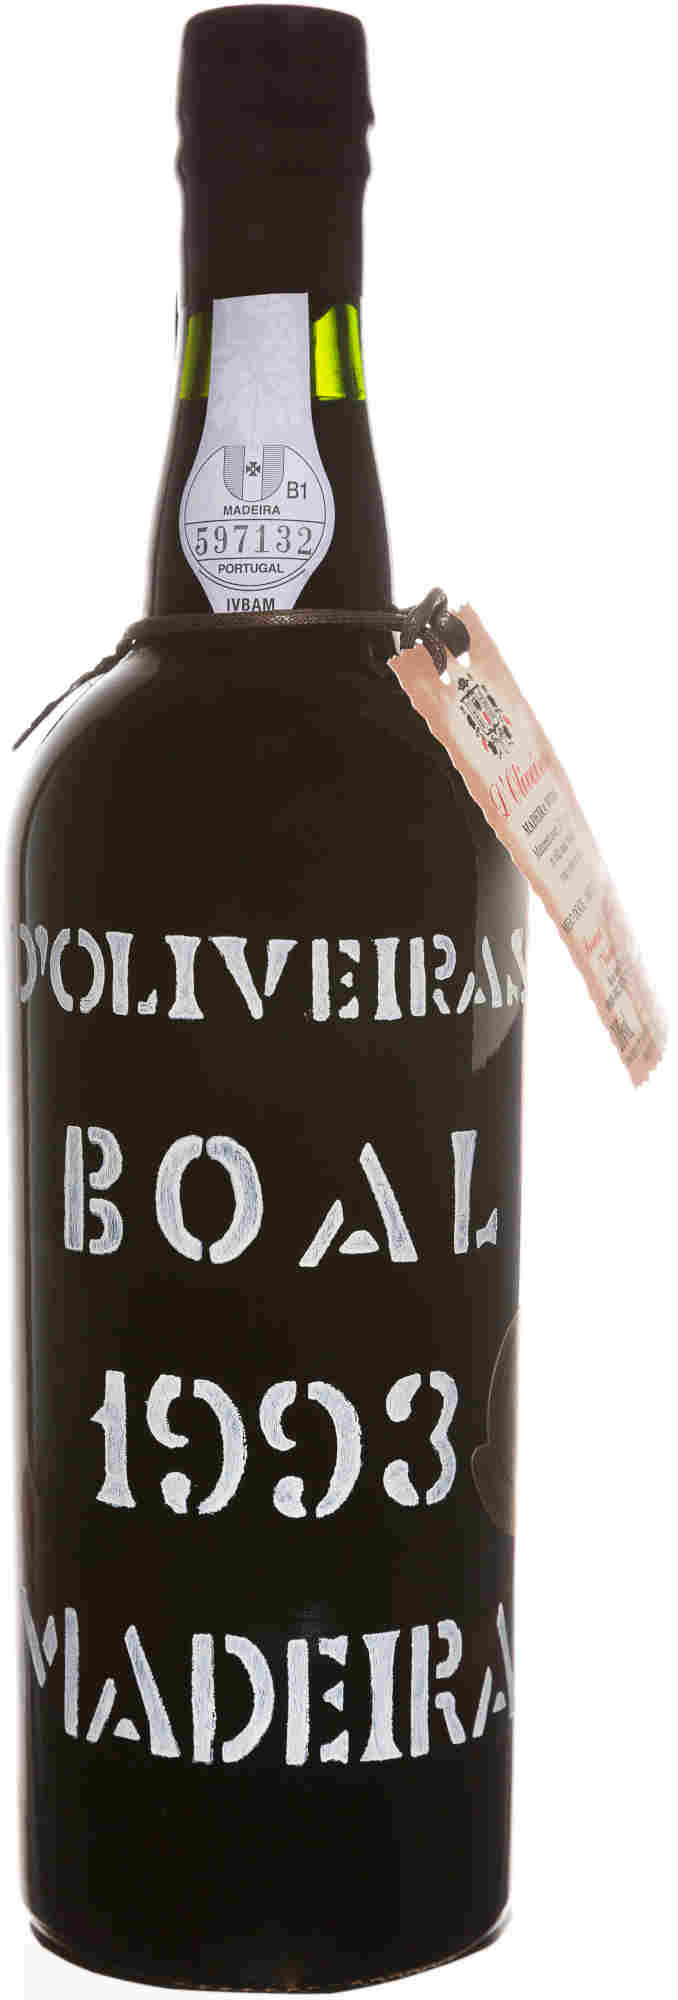 D-Oliveira-Boal-1993